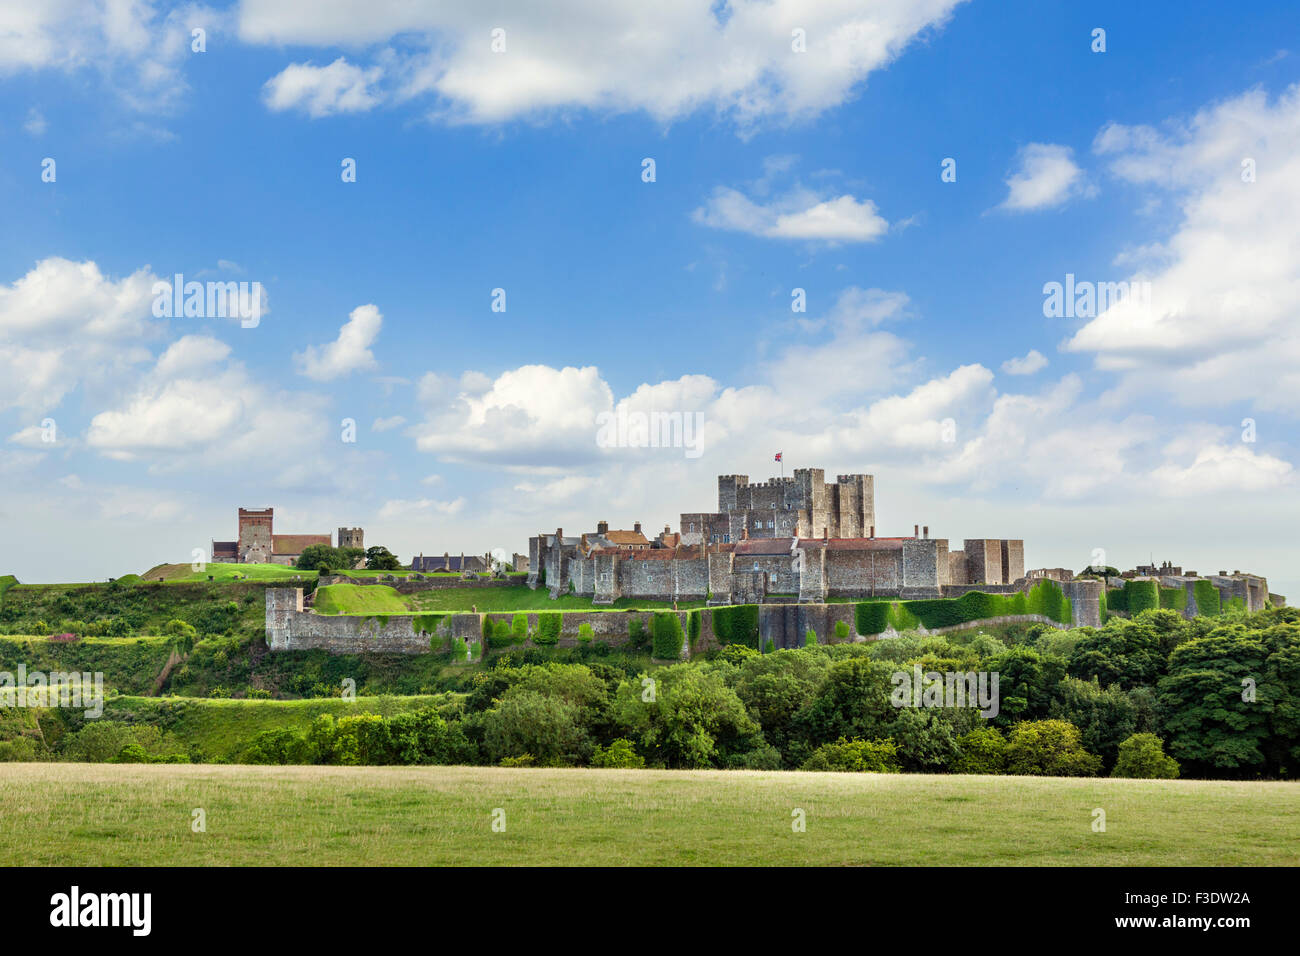 Le château de Douvres, Dover, Kent, England, UK Banque D'Images